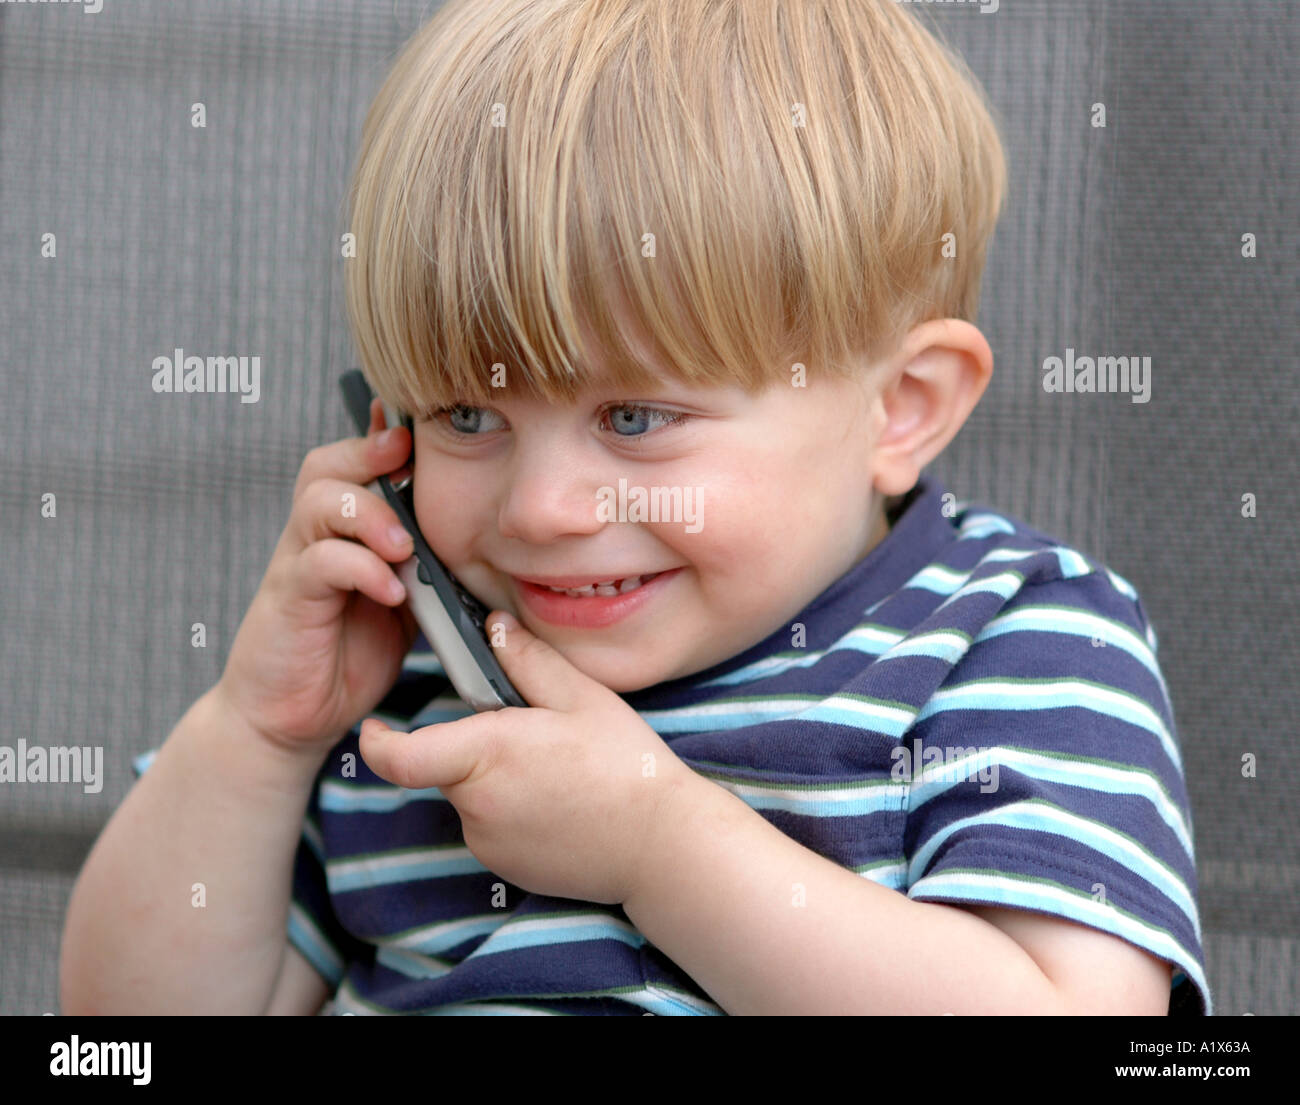 Petit garçon enfant talking on cell phone 'communiquer' smiling Banque D'Images